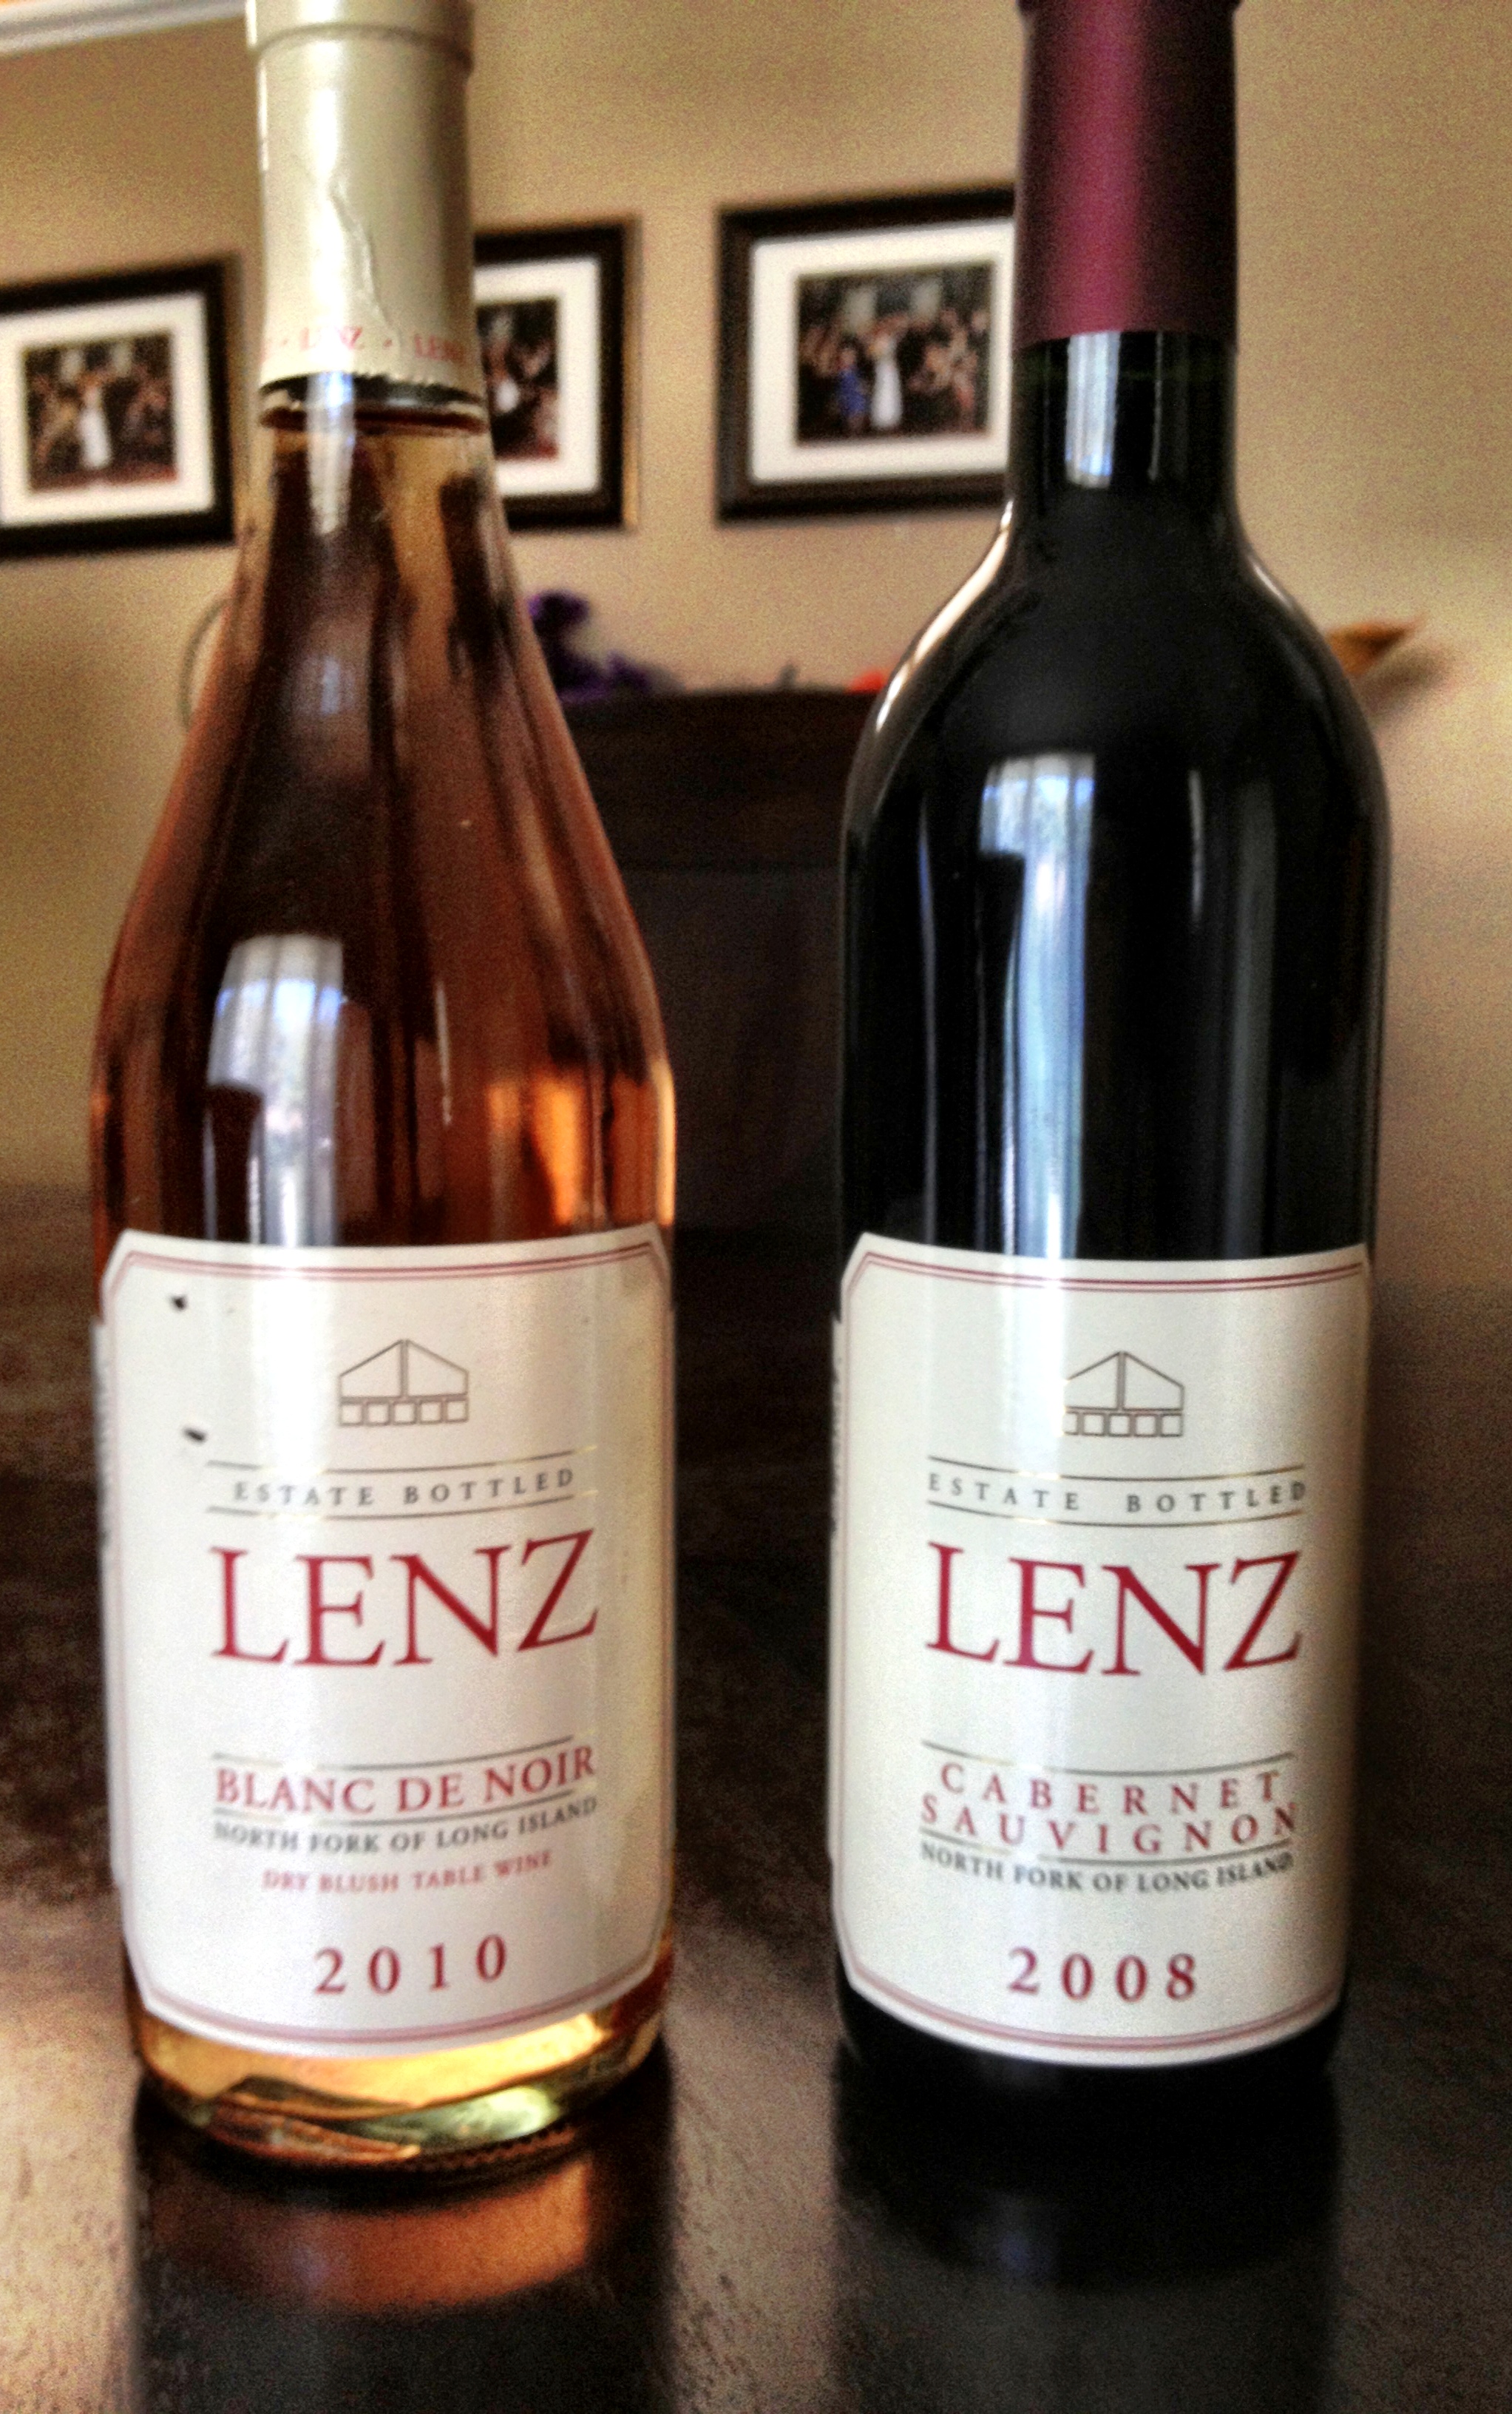 Lenz winery